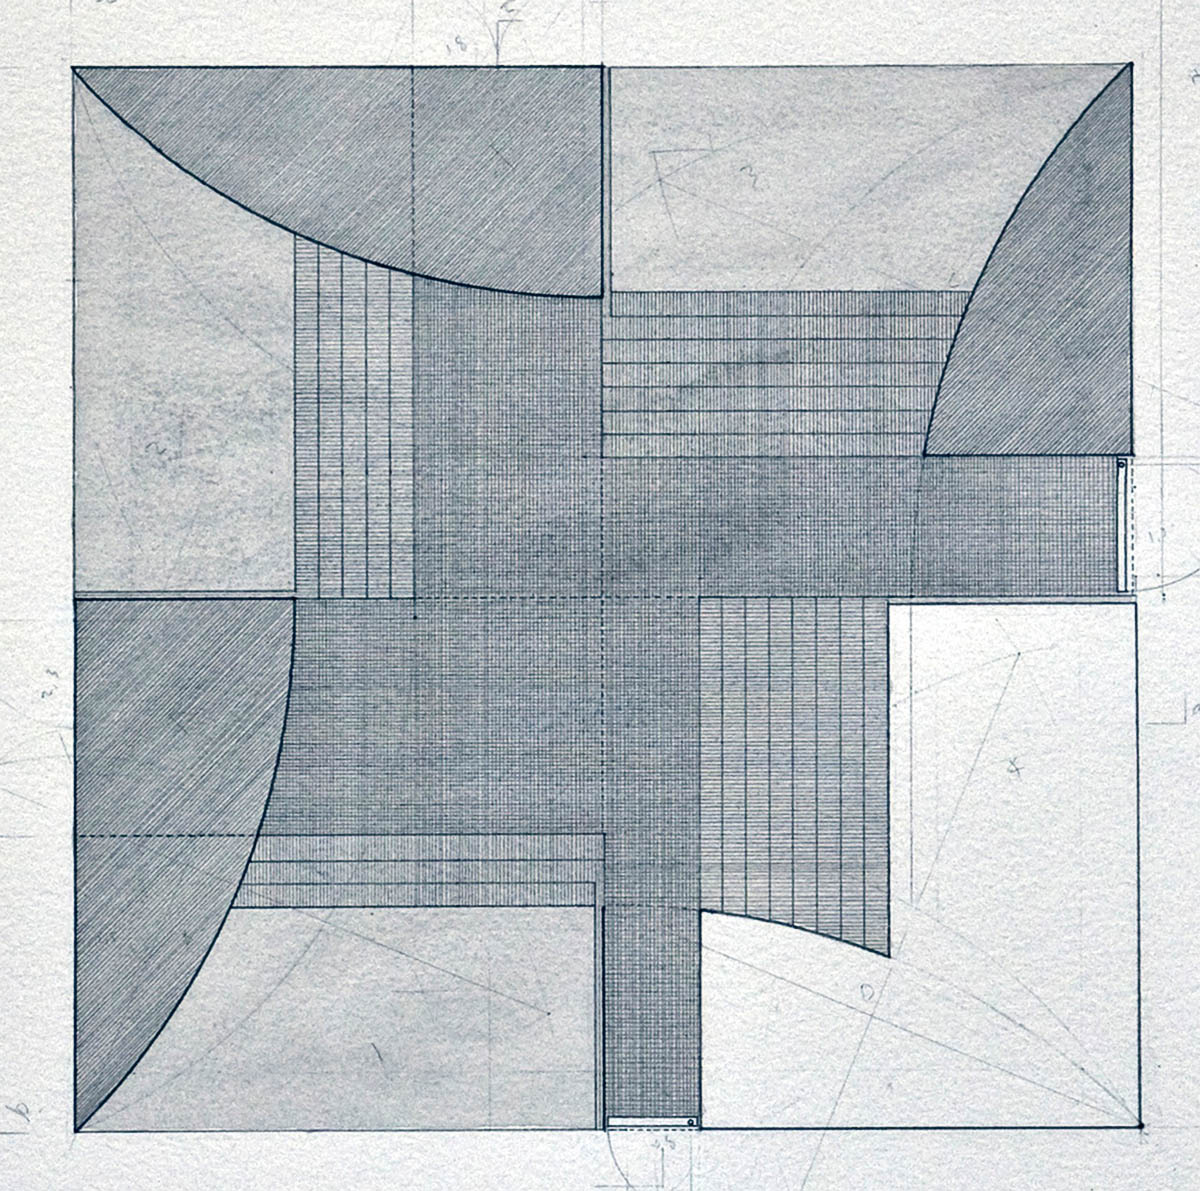 Beate Hølmebakk’s Paper Architecture 9